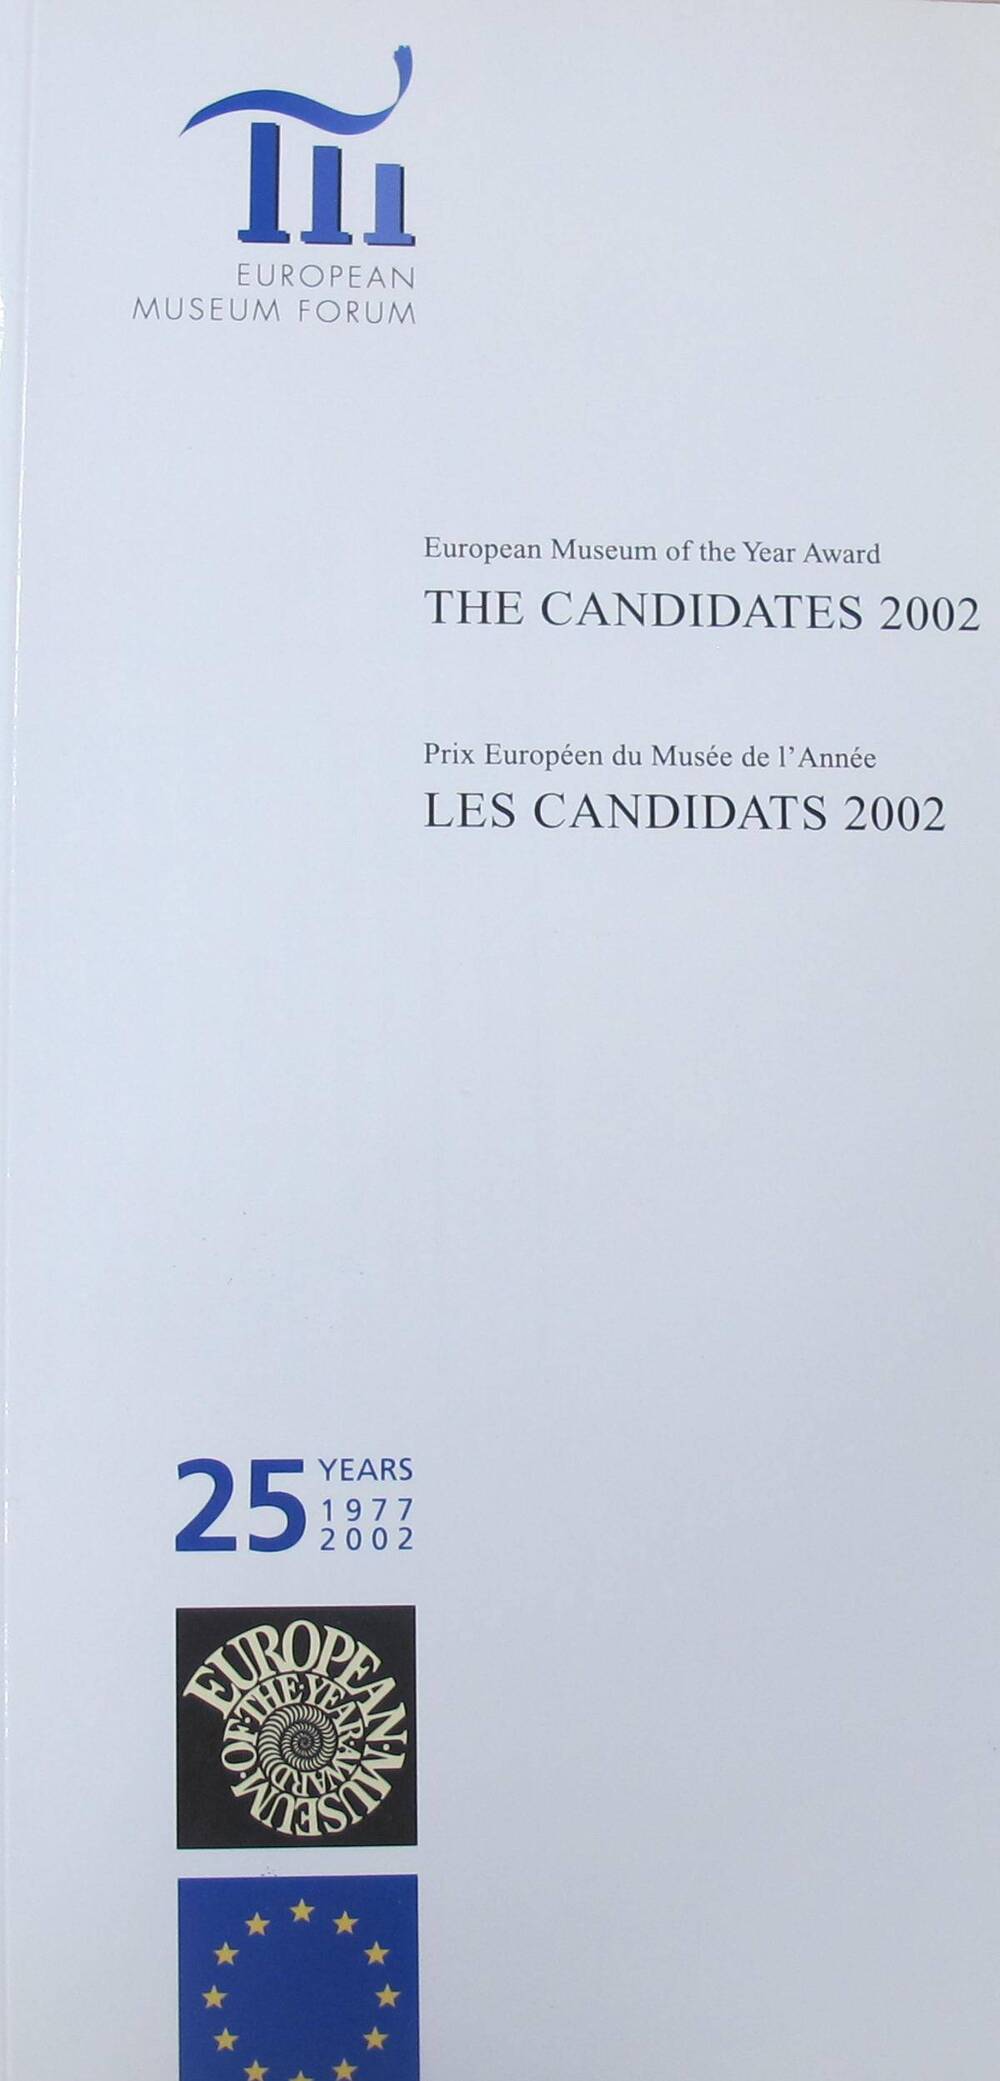 Перечень участников конкурса Европейского музейного форума, вышедших в финал в 2002 г. The Candidates 2002.